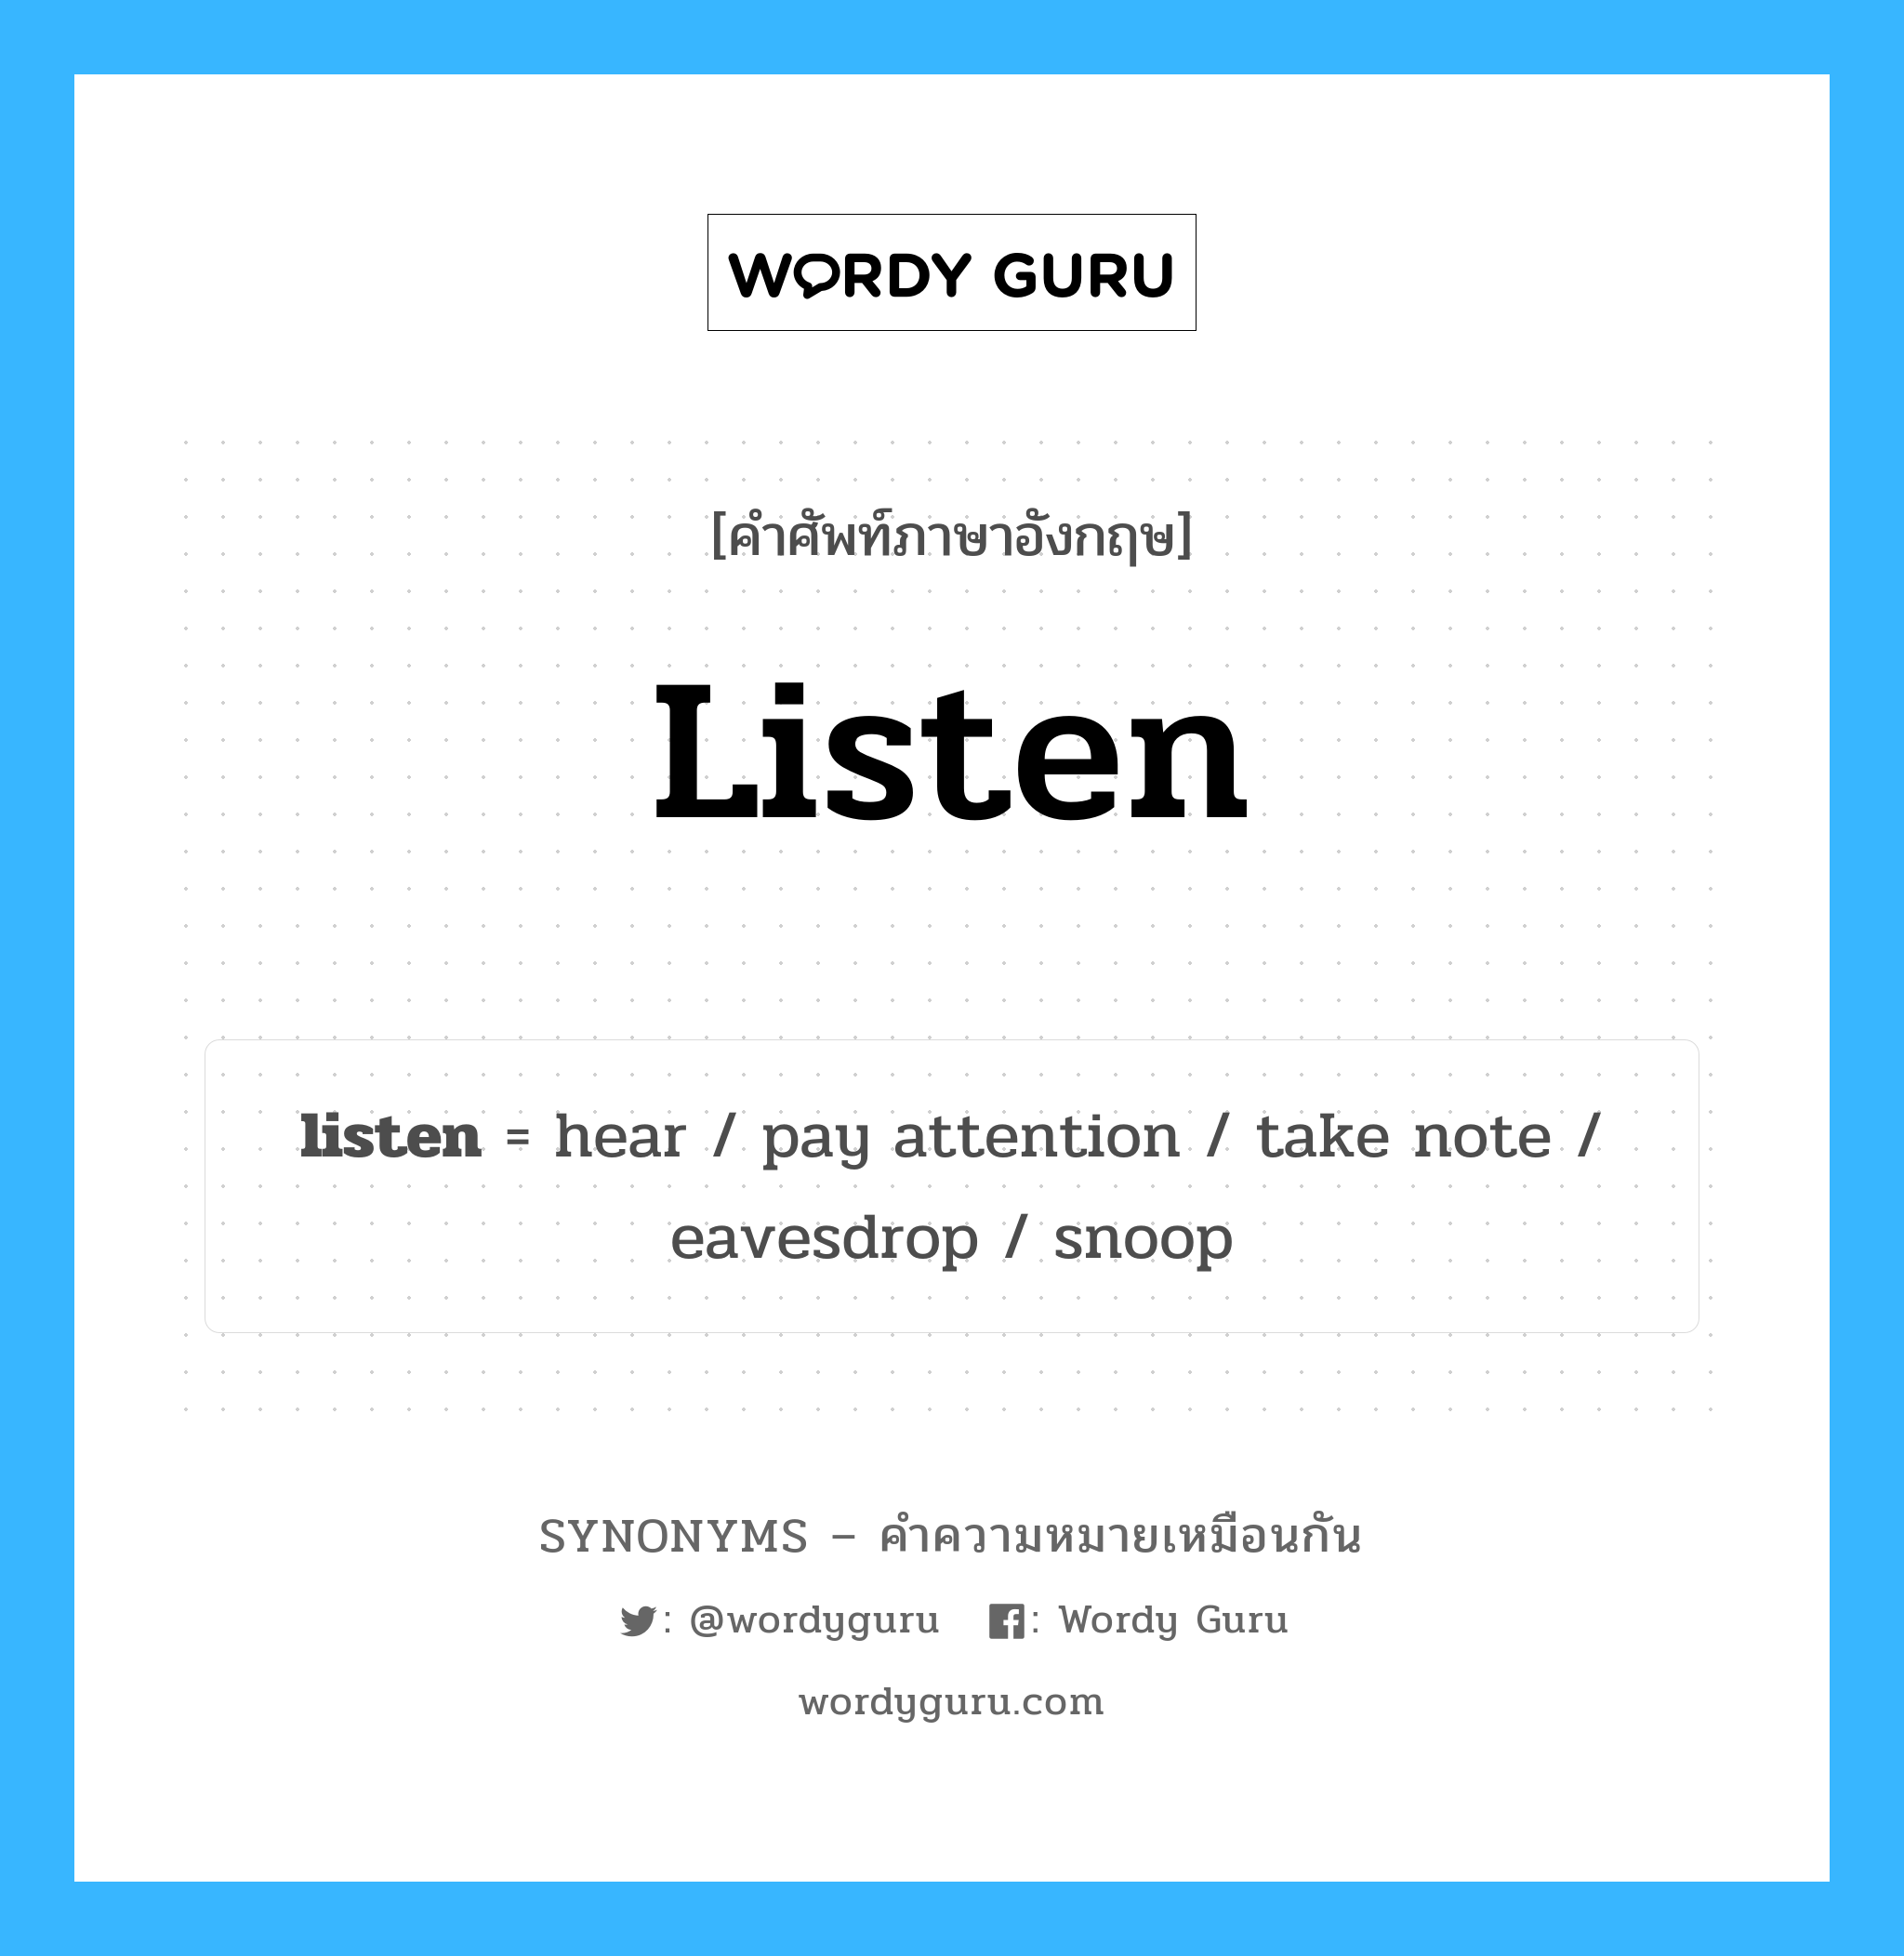 hear เป็นหนึ่งใน listen และมีคำอื่น ๆ อีกดังนี้, คำศัพท์ภาษาอังกฤษ hear ความหมายคล้ายกันกับ listen แปลว่า ได้ยิน หมวด listen